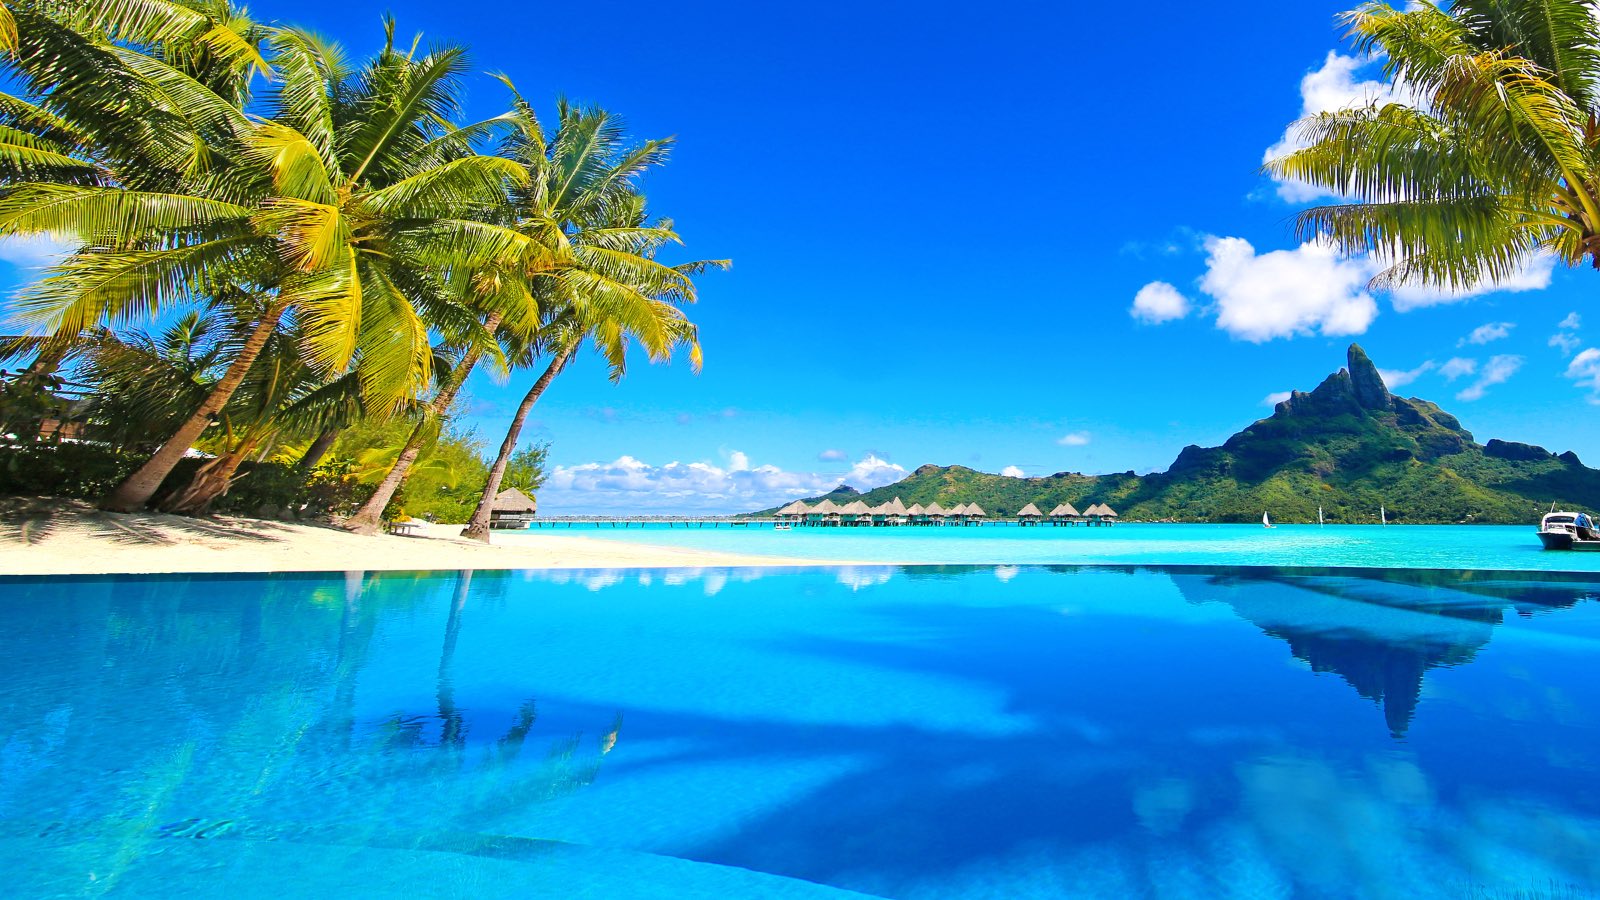 5 Best Bora Bora Resorts for an Unforgettable Honeymoon